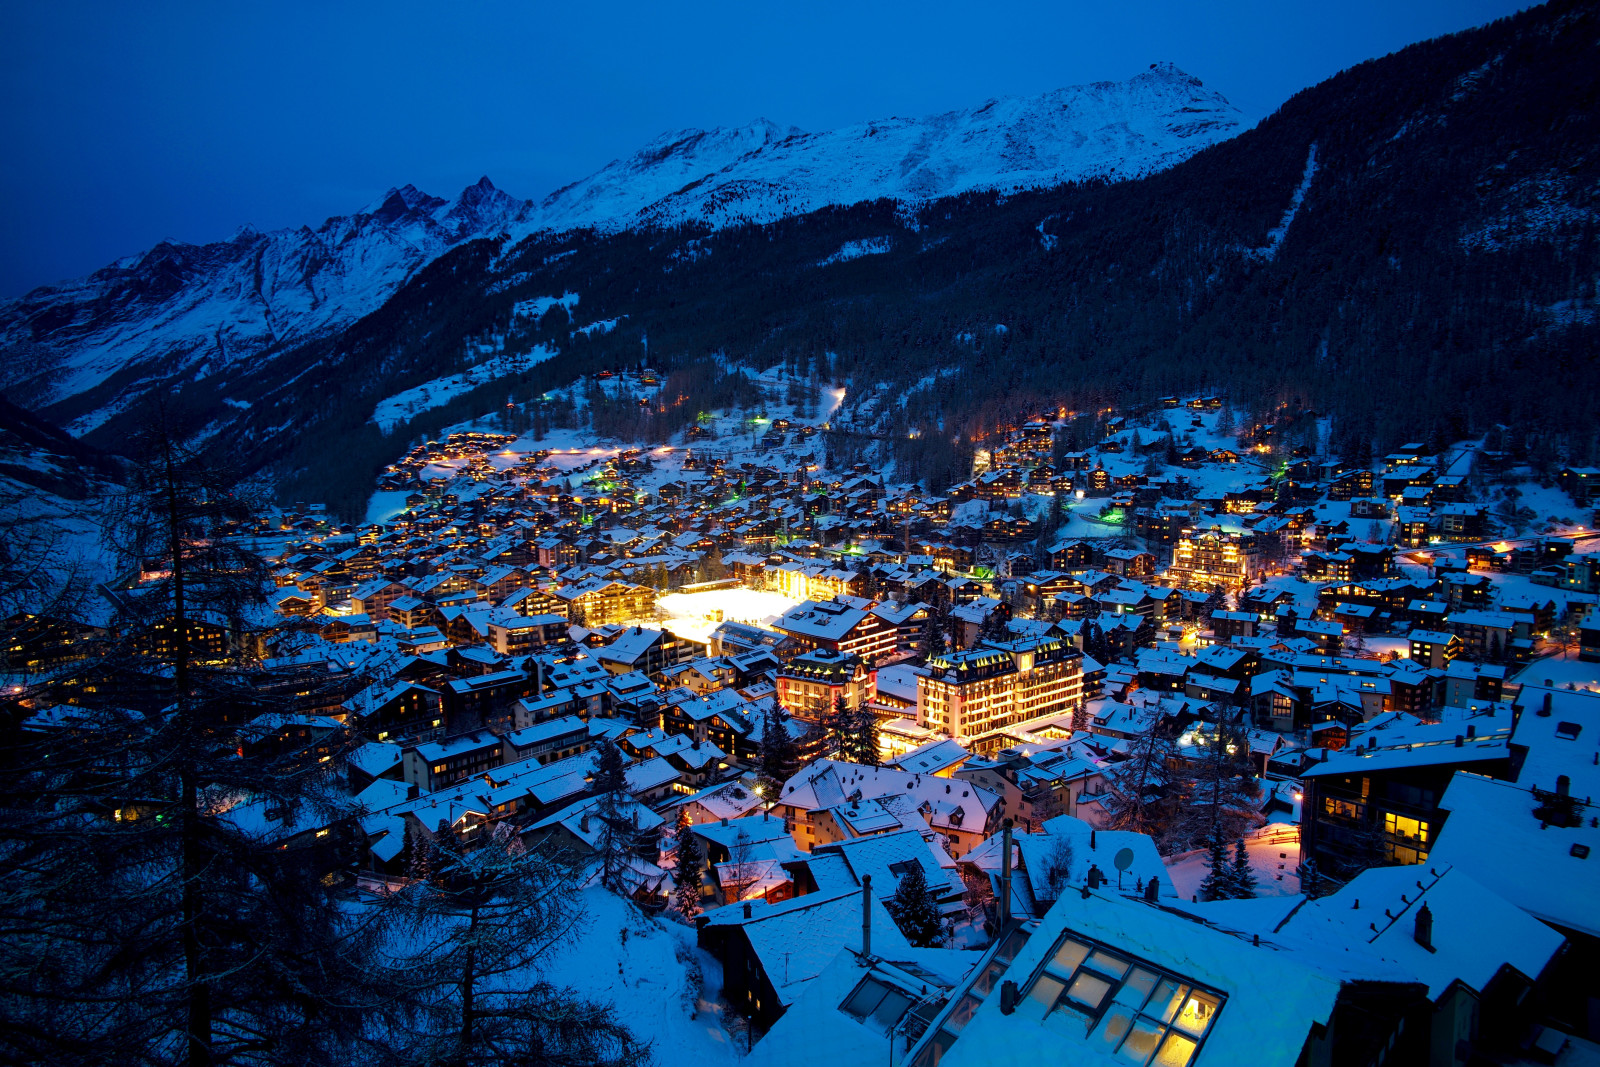 雪, 瑞士, 冬季, 树木, 灯, 晚, 山脉, 家